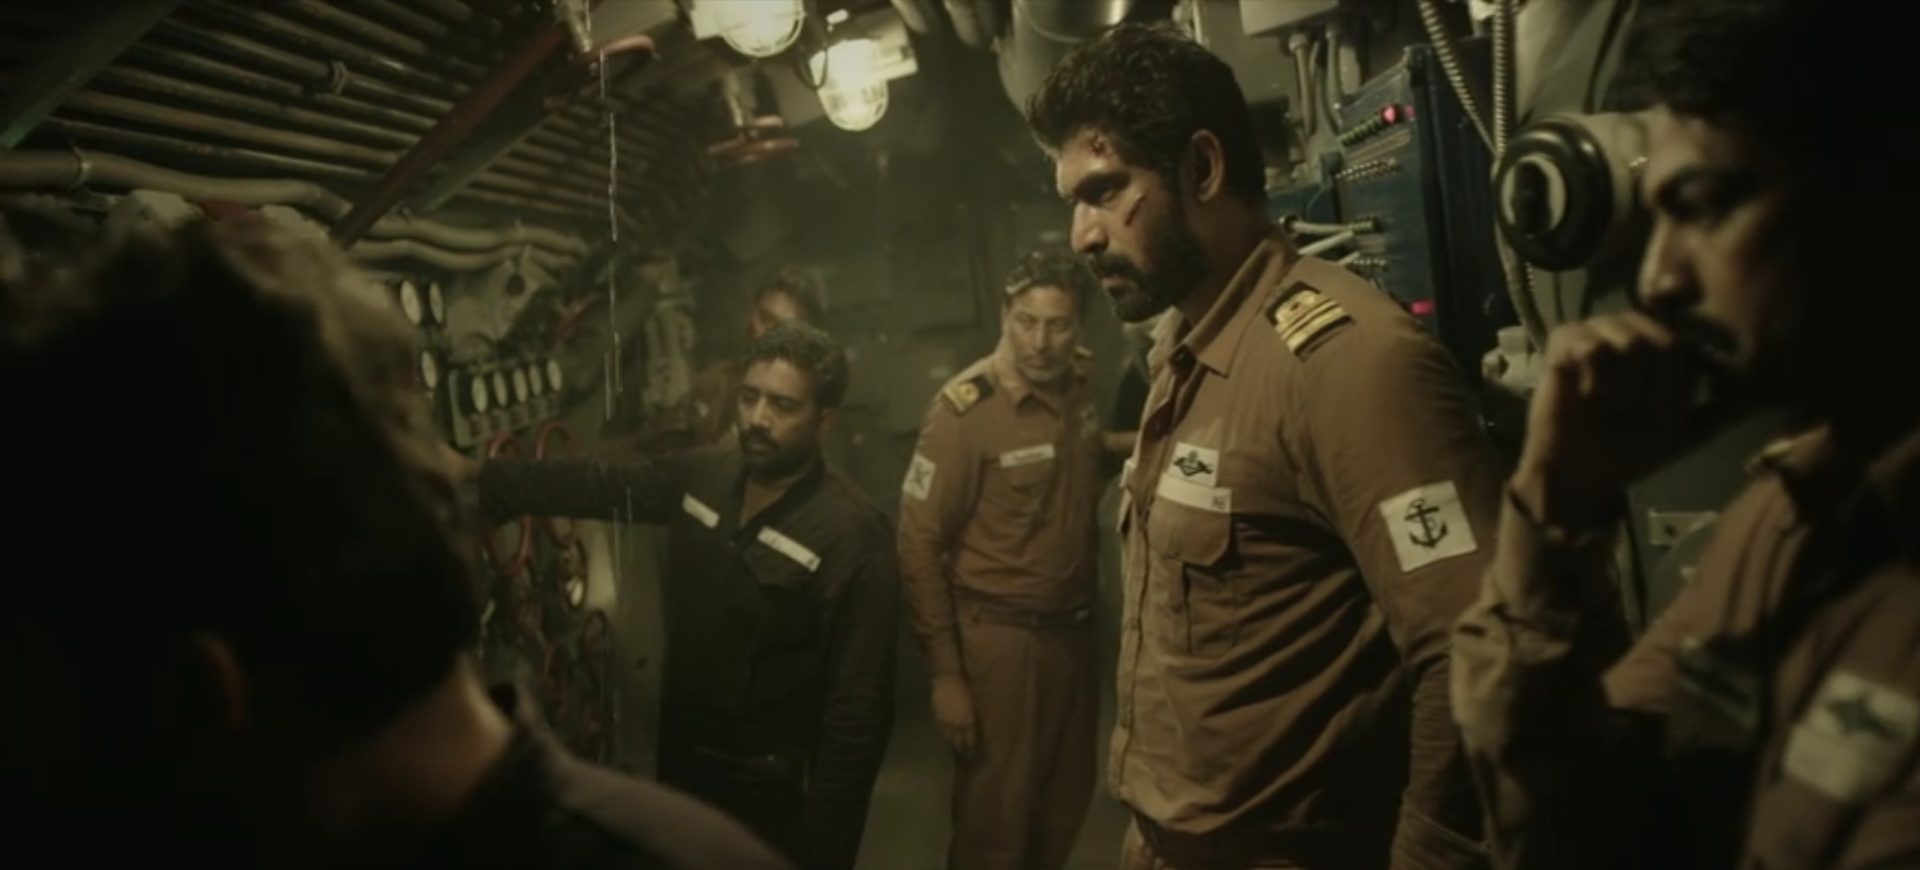 Rana Daggubati als U-Boot-Kommandant mit leicht verwundetem Gesicht in angespannter Atmosphäre.